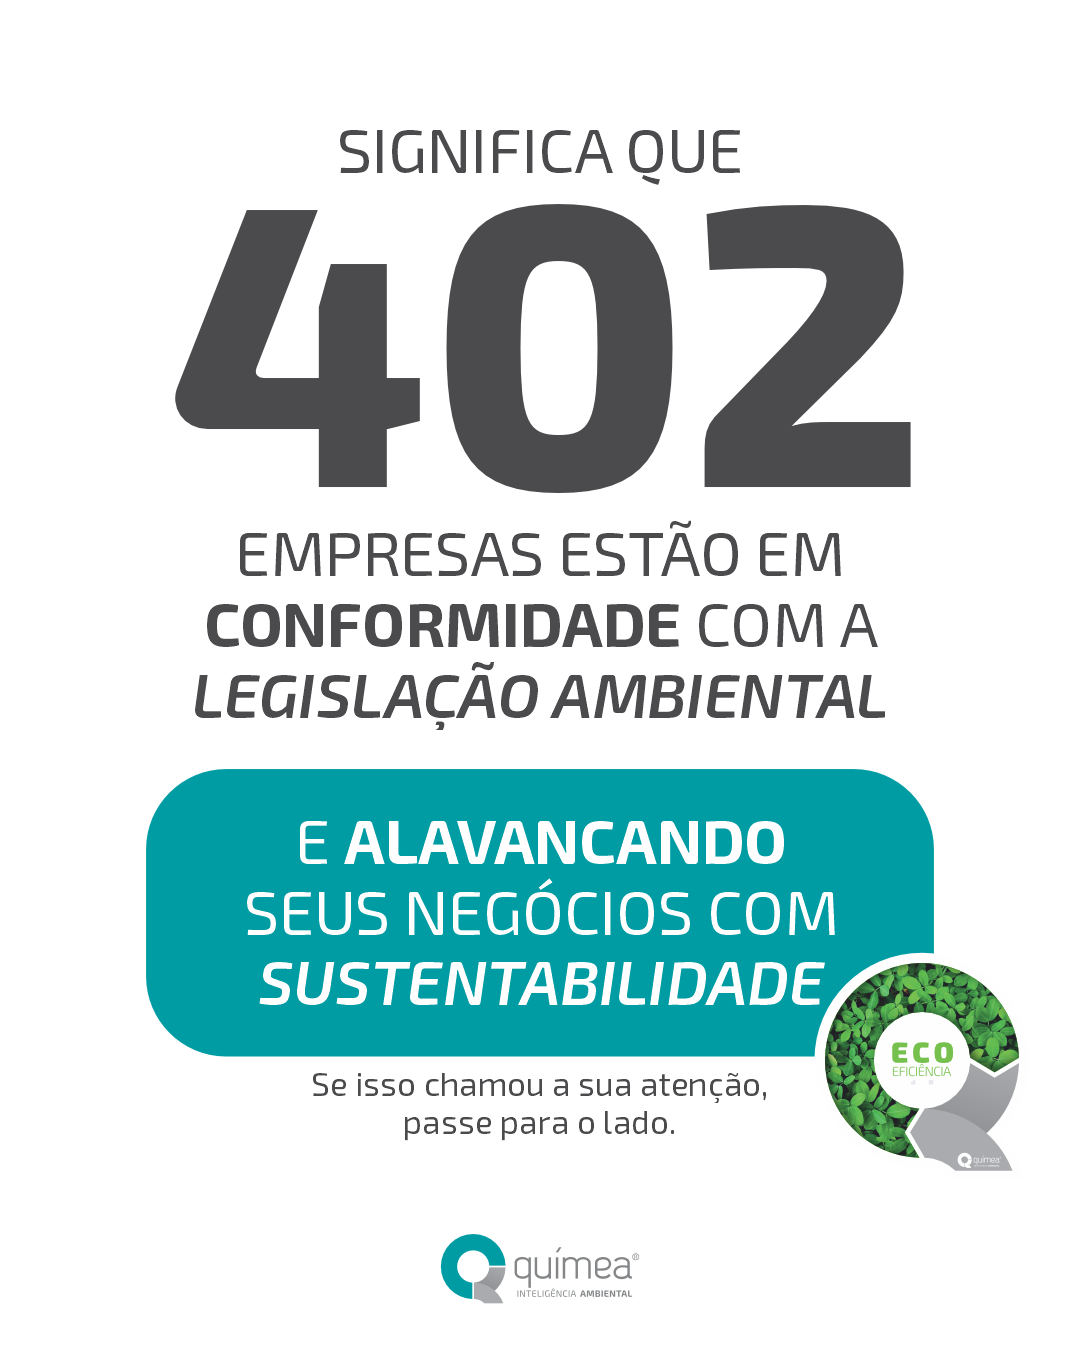 402 empresas participantes do Programa Ecoeficiência